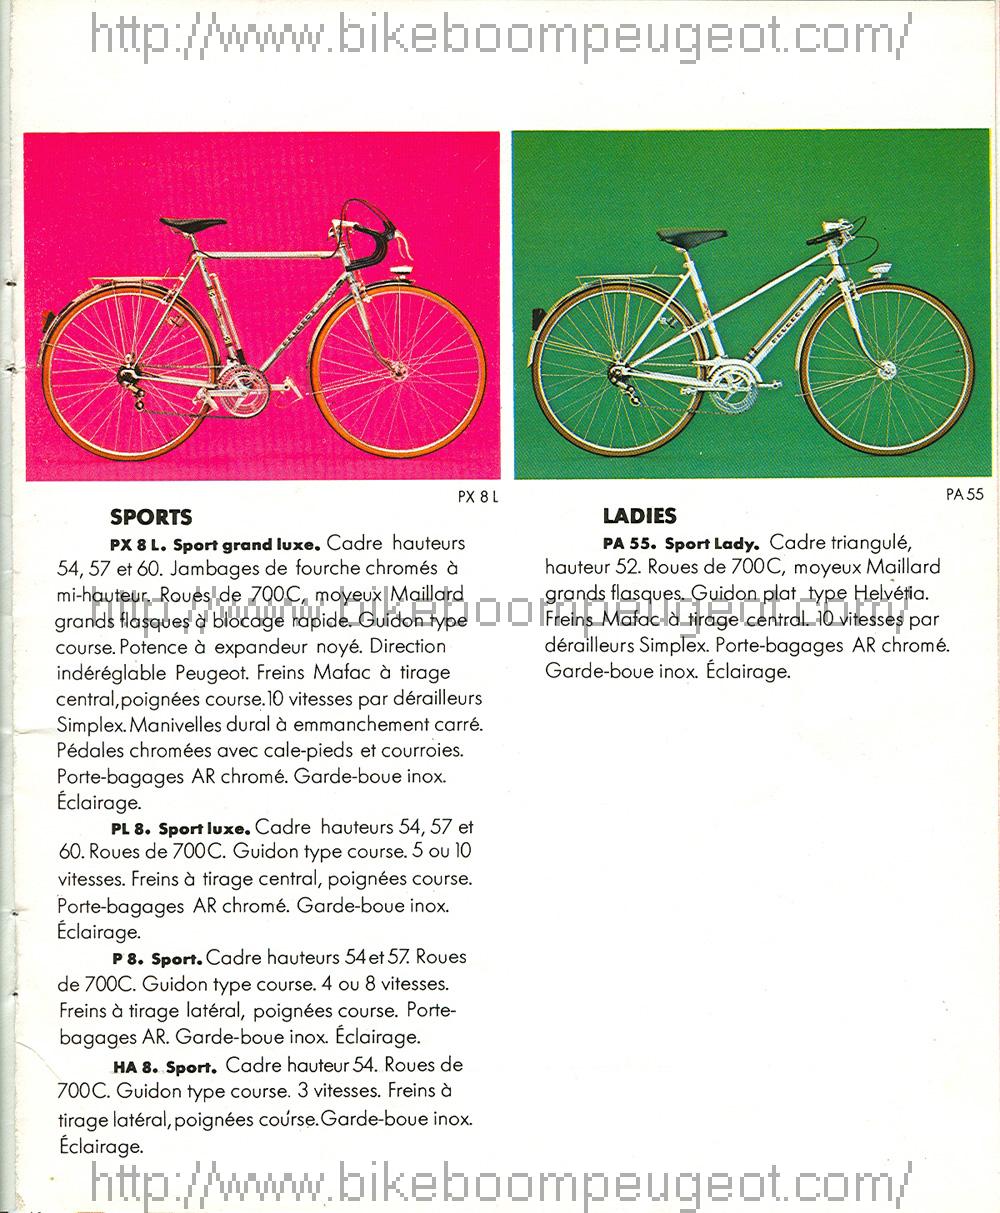 Le vélo quand j'étais jeune ;) Peugeot_1978_French_Catalog_Sports_Ladies_BikeBoomPeugeot